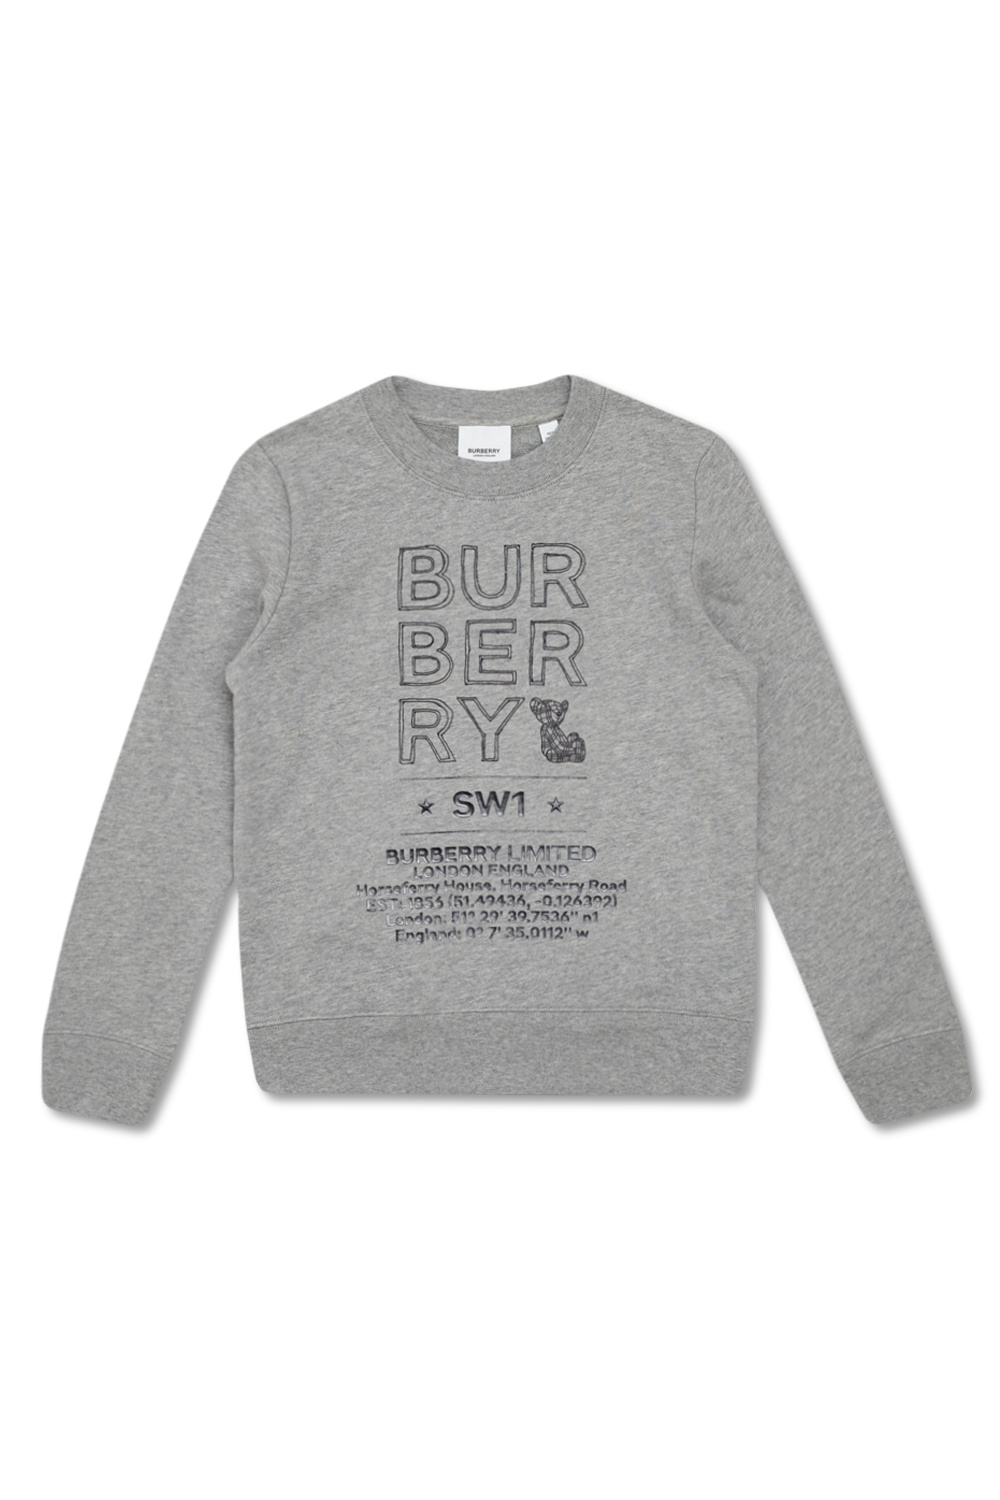 burberry even Kids ‘Joel’ sweatshirt with logo